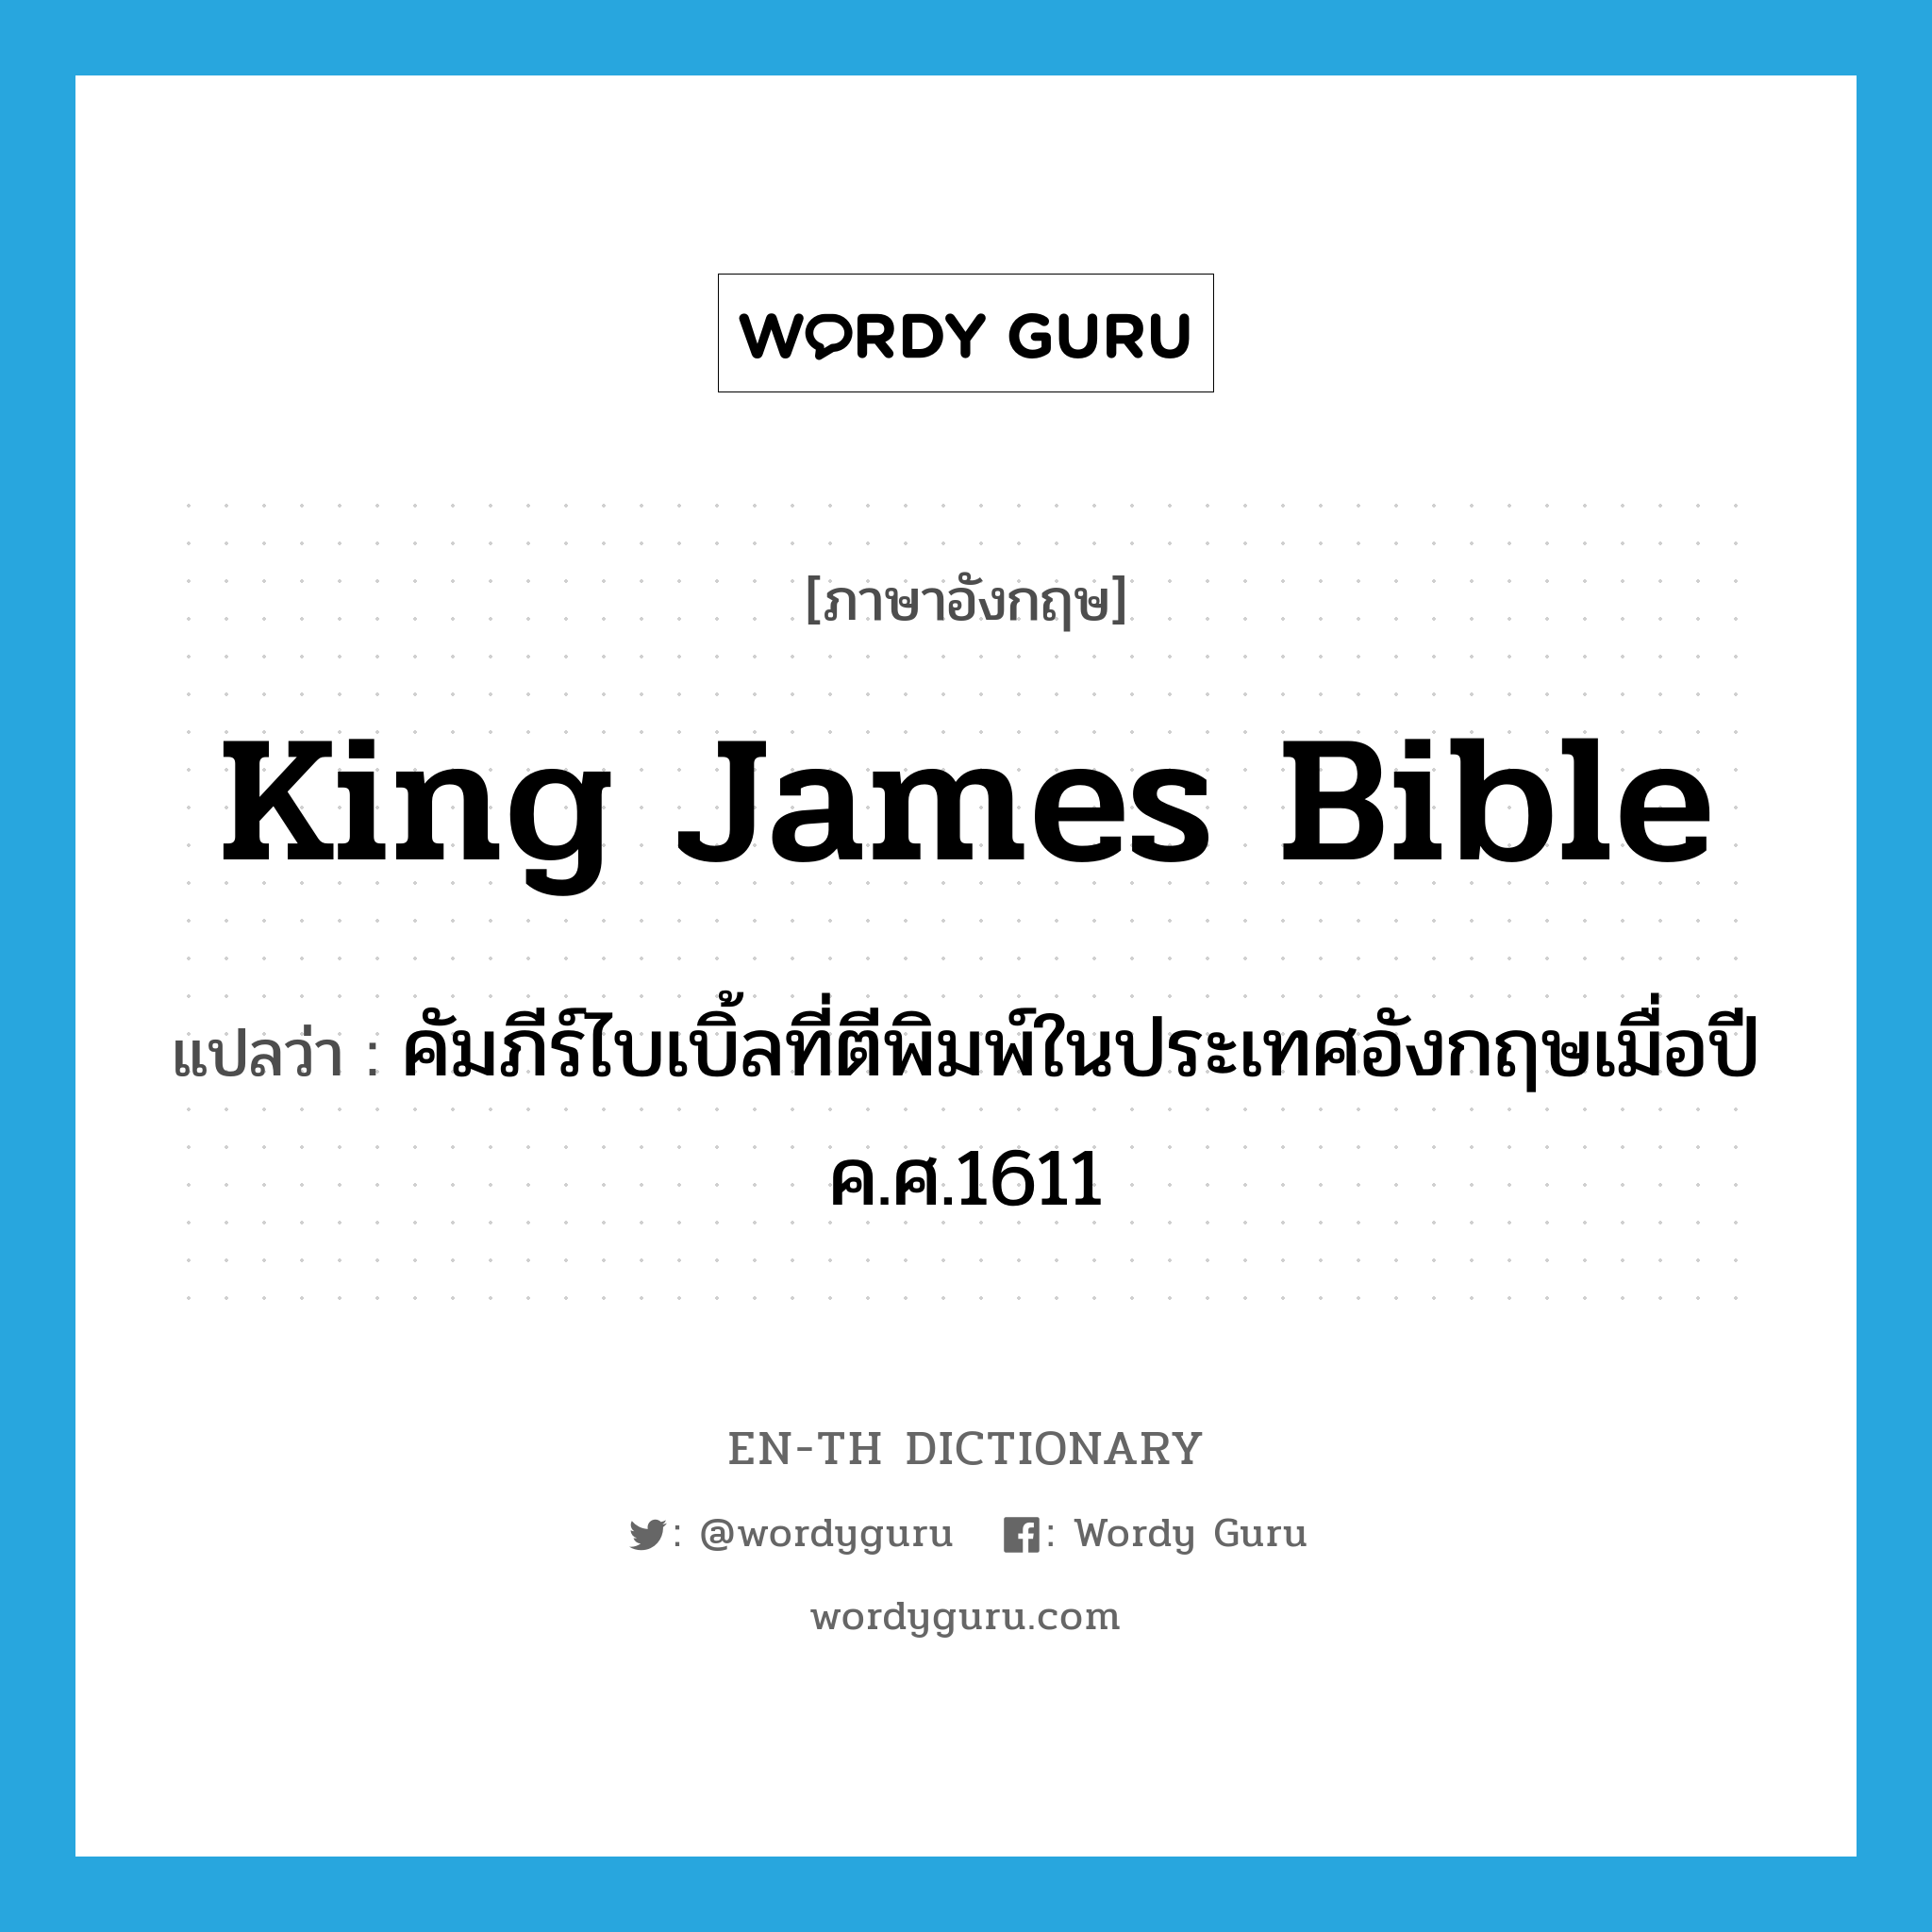 คัมภีร์ไบเบิ้ลที่ตีพิมพ์ในประเทศอังกฤษเมื่อปี ค.ศ.1611 ภาษาอังกฤษ?, คำศัพท์ภาษาอังกฤษ คัมภีร์ไบเบิ้ลที่ตีพิมพ์ในประเทศอังกฤษเมื่อปี ค.ศ.1611 แปลว่า King James Bible ประเภท N หมวด N